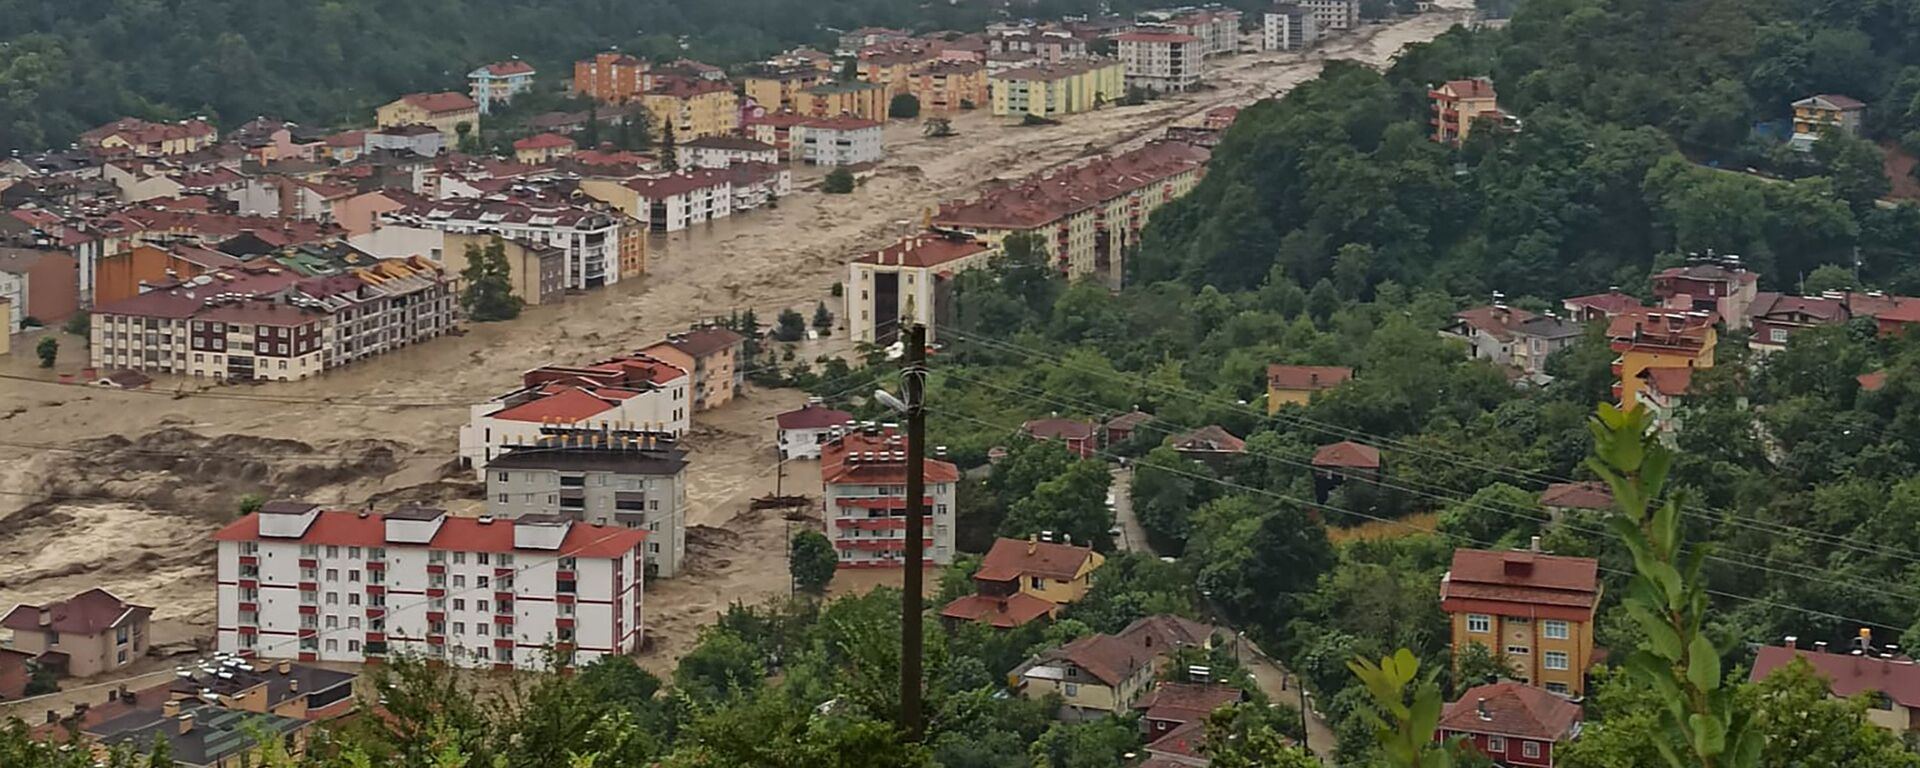 منطقة أغرقتها الفيضانات في أعقاب هطول أمطار غزيرة بالقرب من كاستامونو في تركيا 11 أغسطس 2021 - سبوتنيك عربي, 1920, 11.08.2021